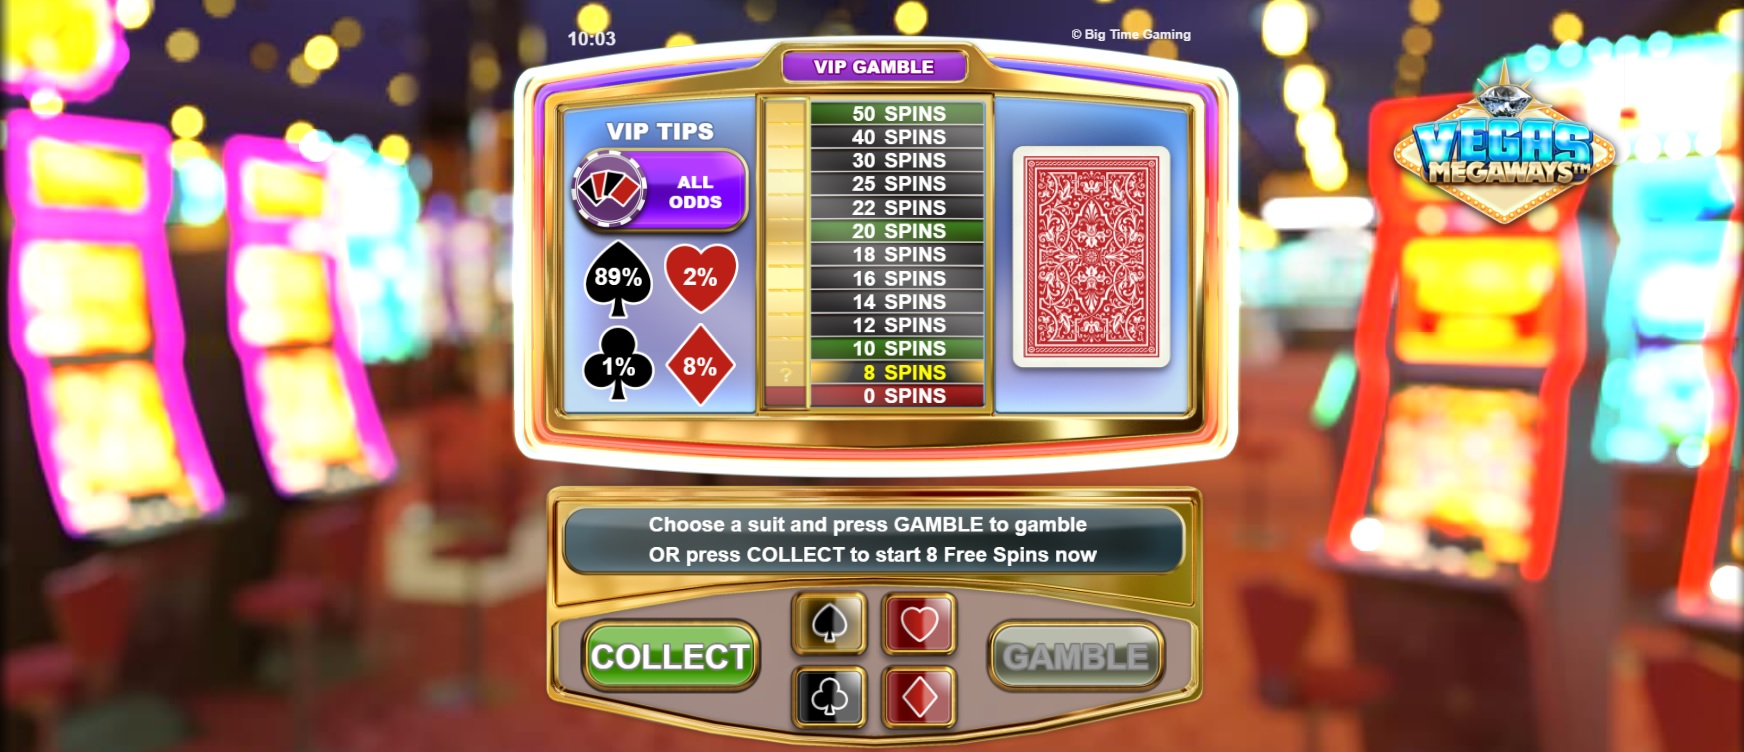 Vegas Megaways, bonus game